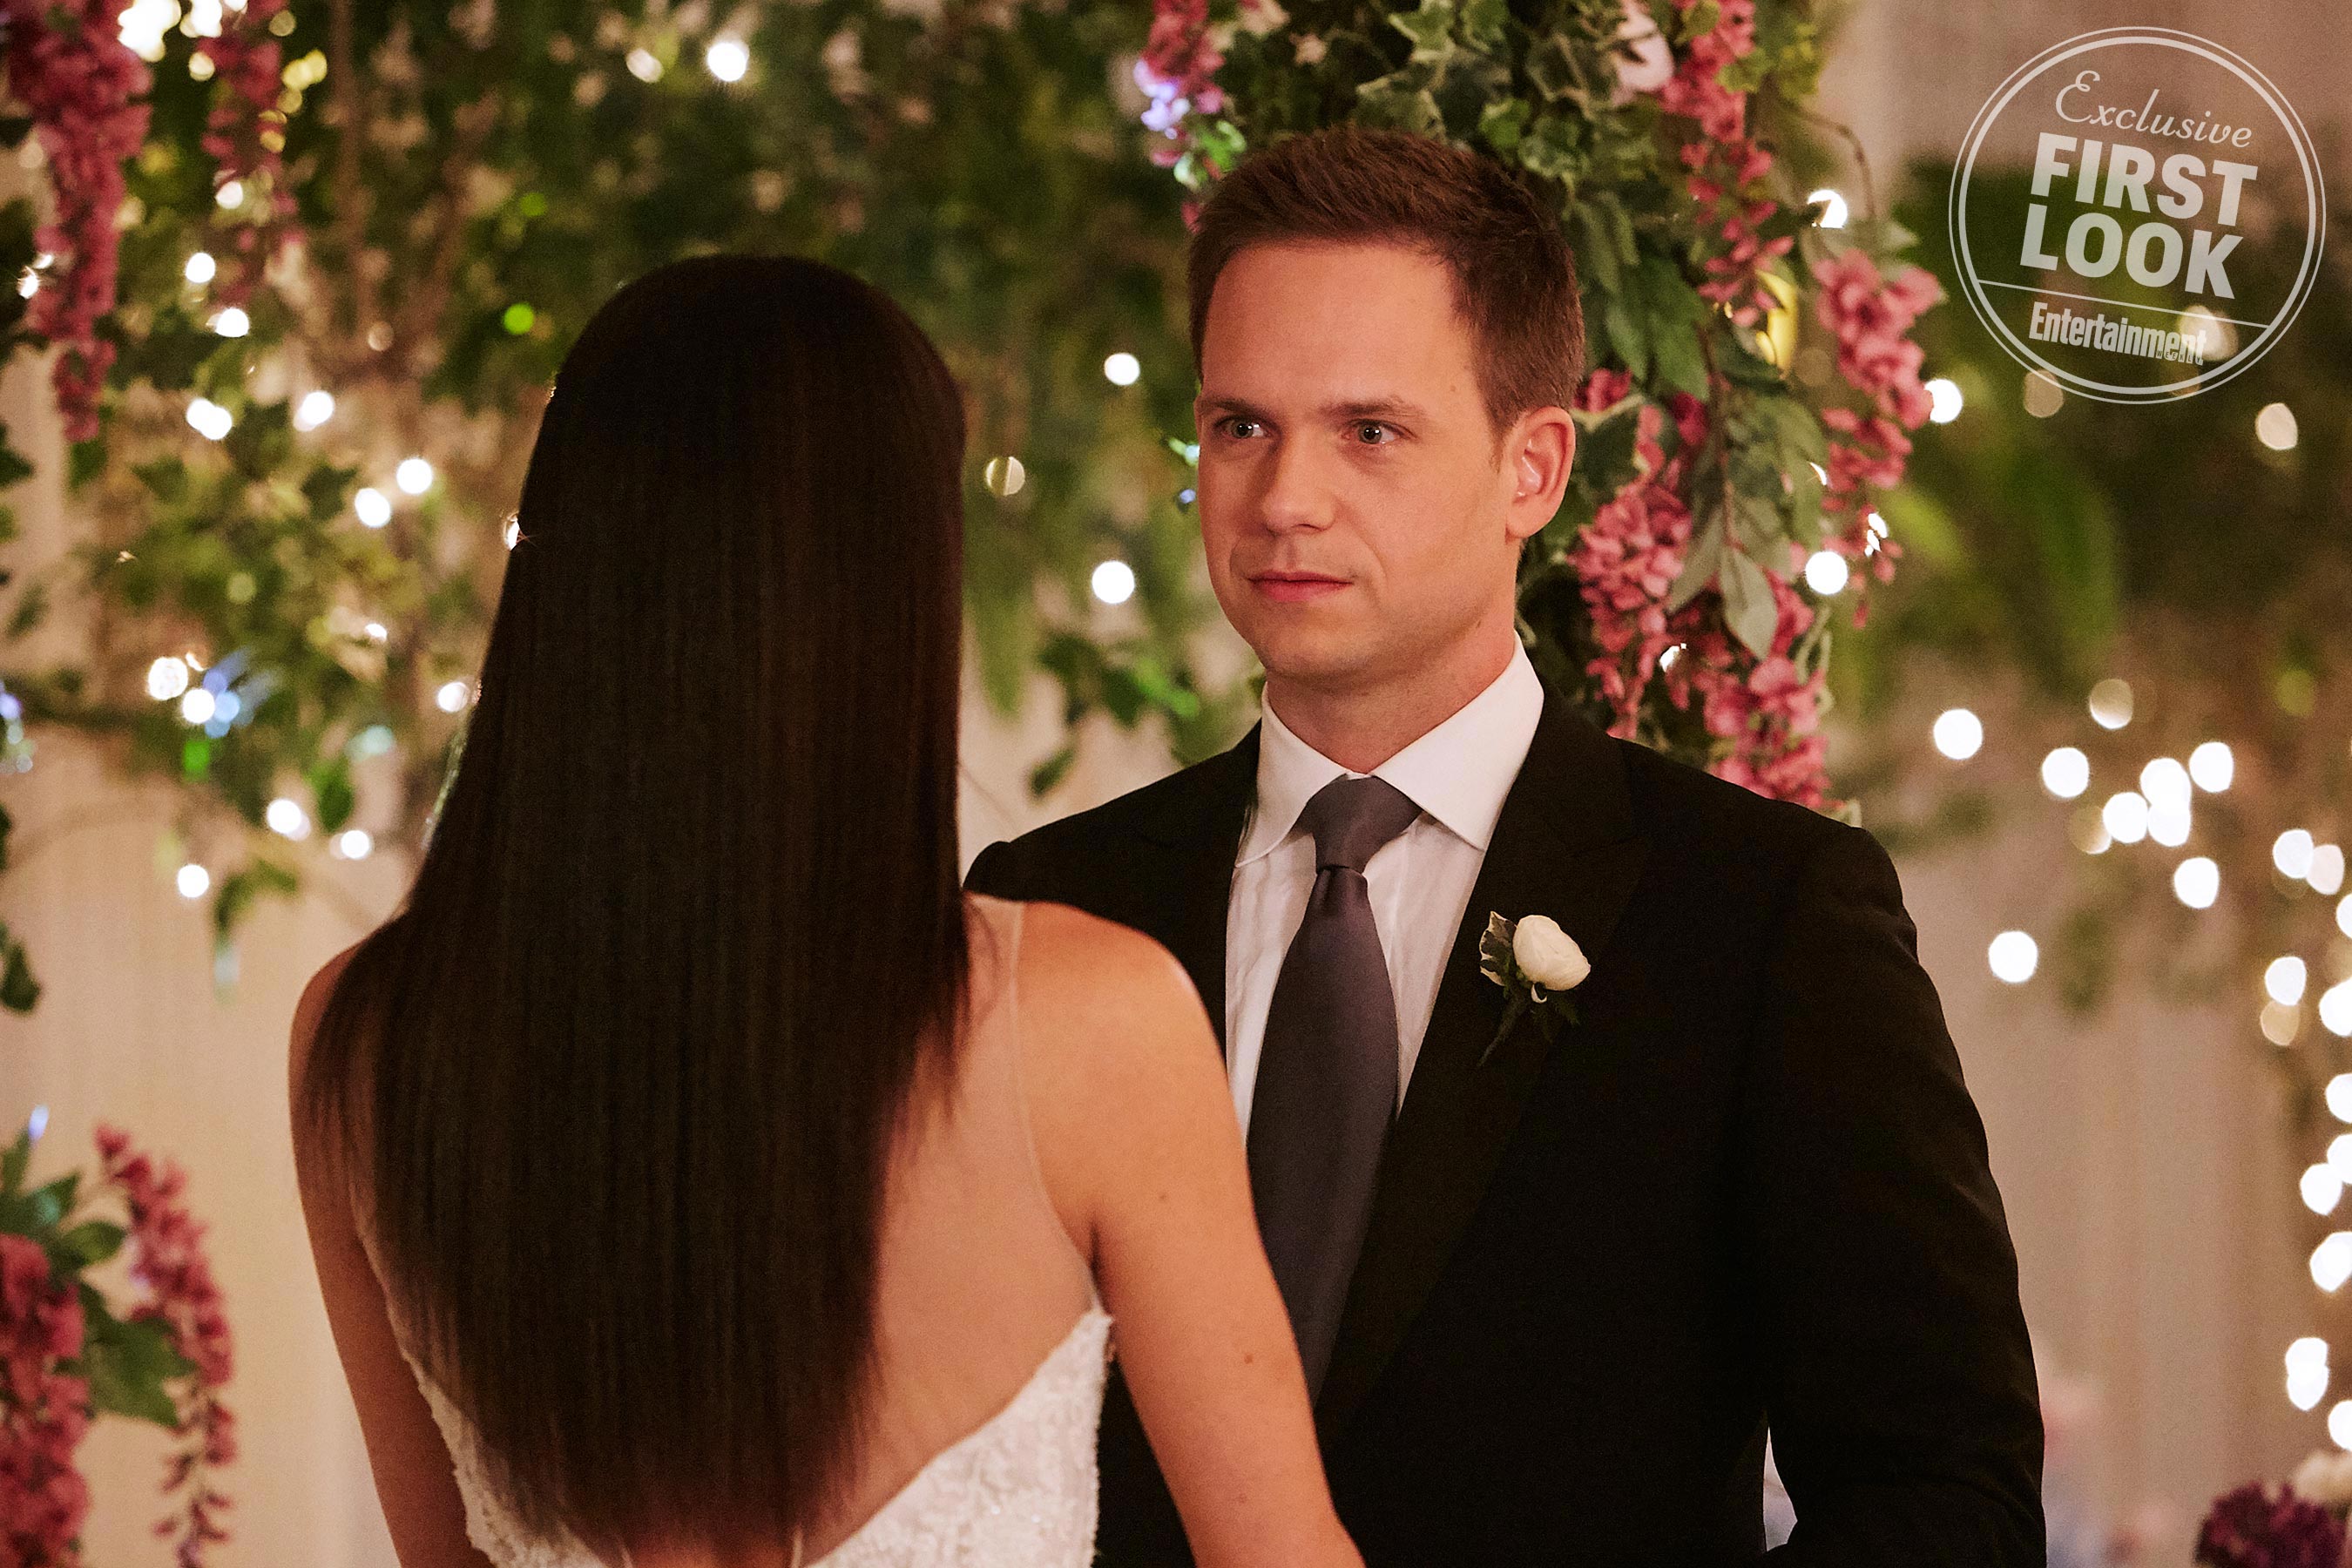 O casamento do finale da 7ª temporada de Suits